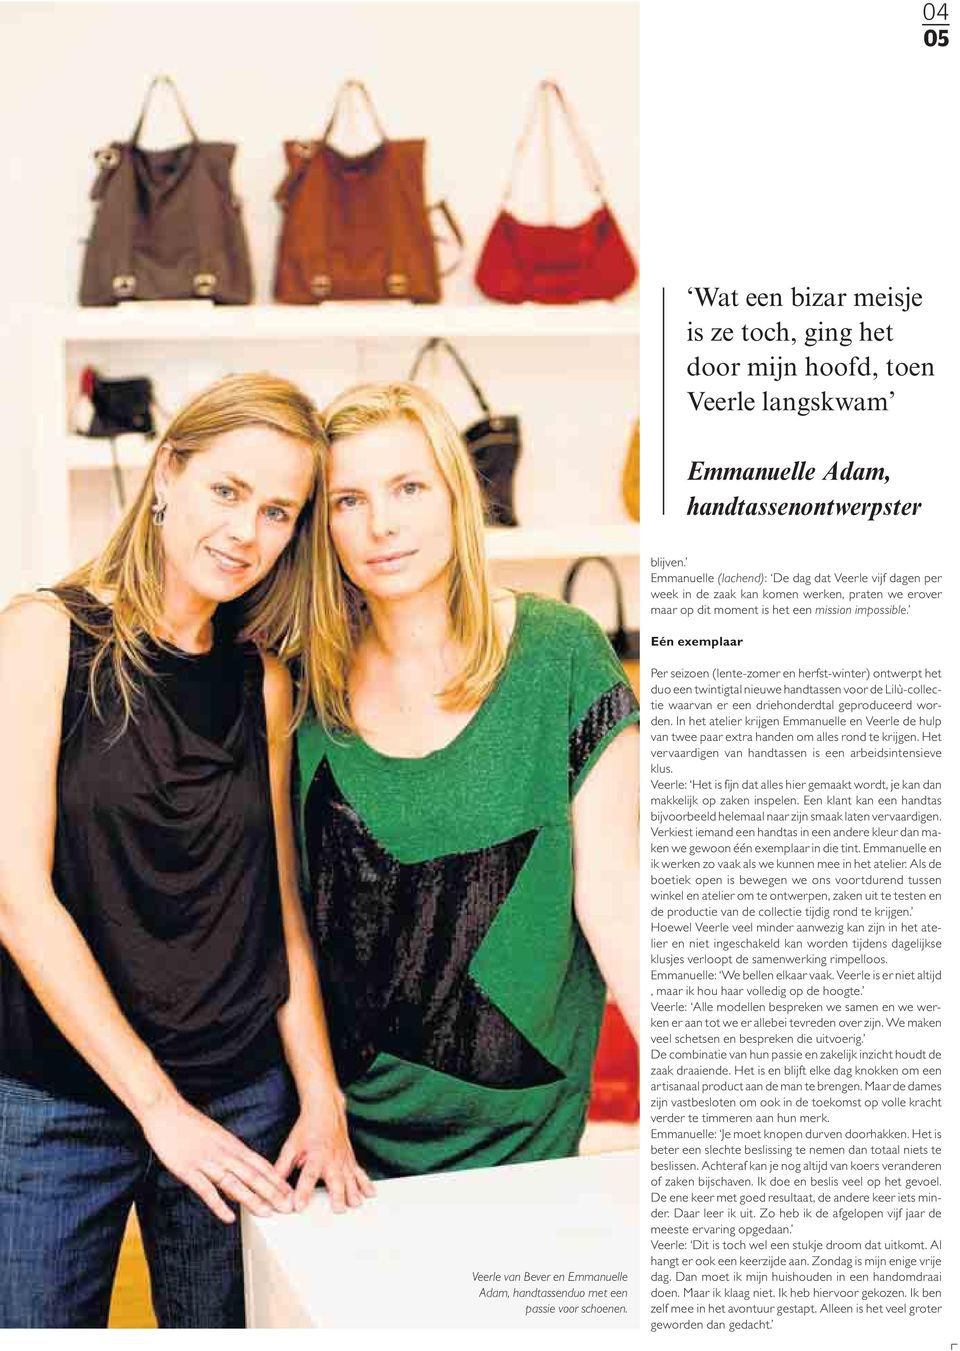 Eén exemplaar Veerle van Bever en Emmanuelle Adam, handtassenduo met een passie voor schoenen.